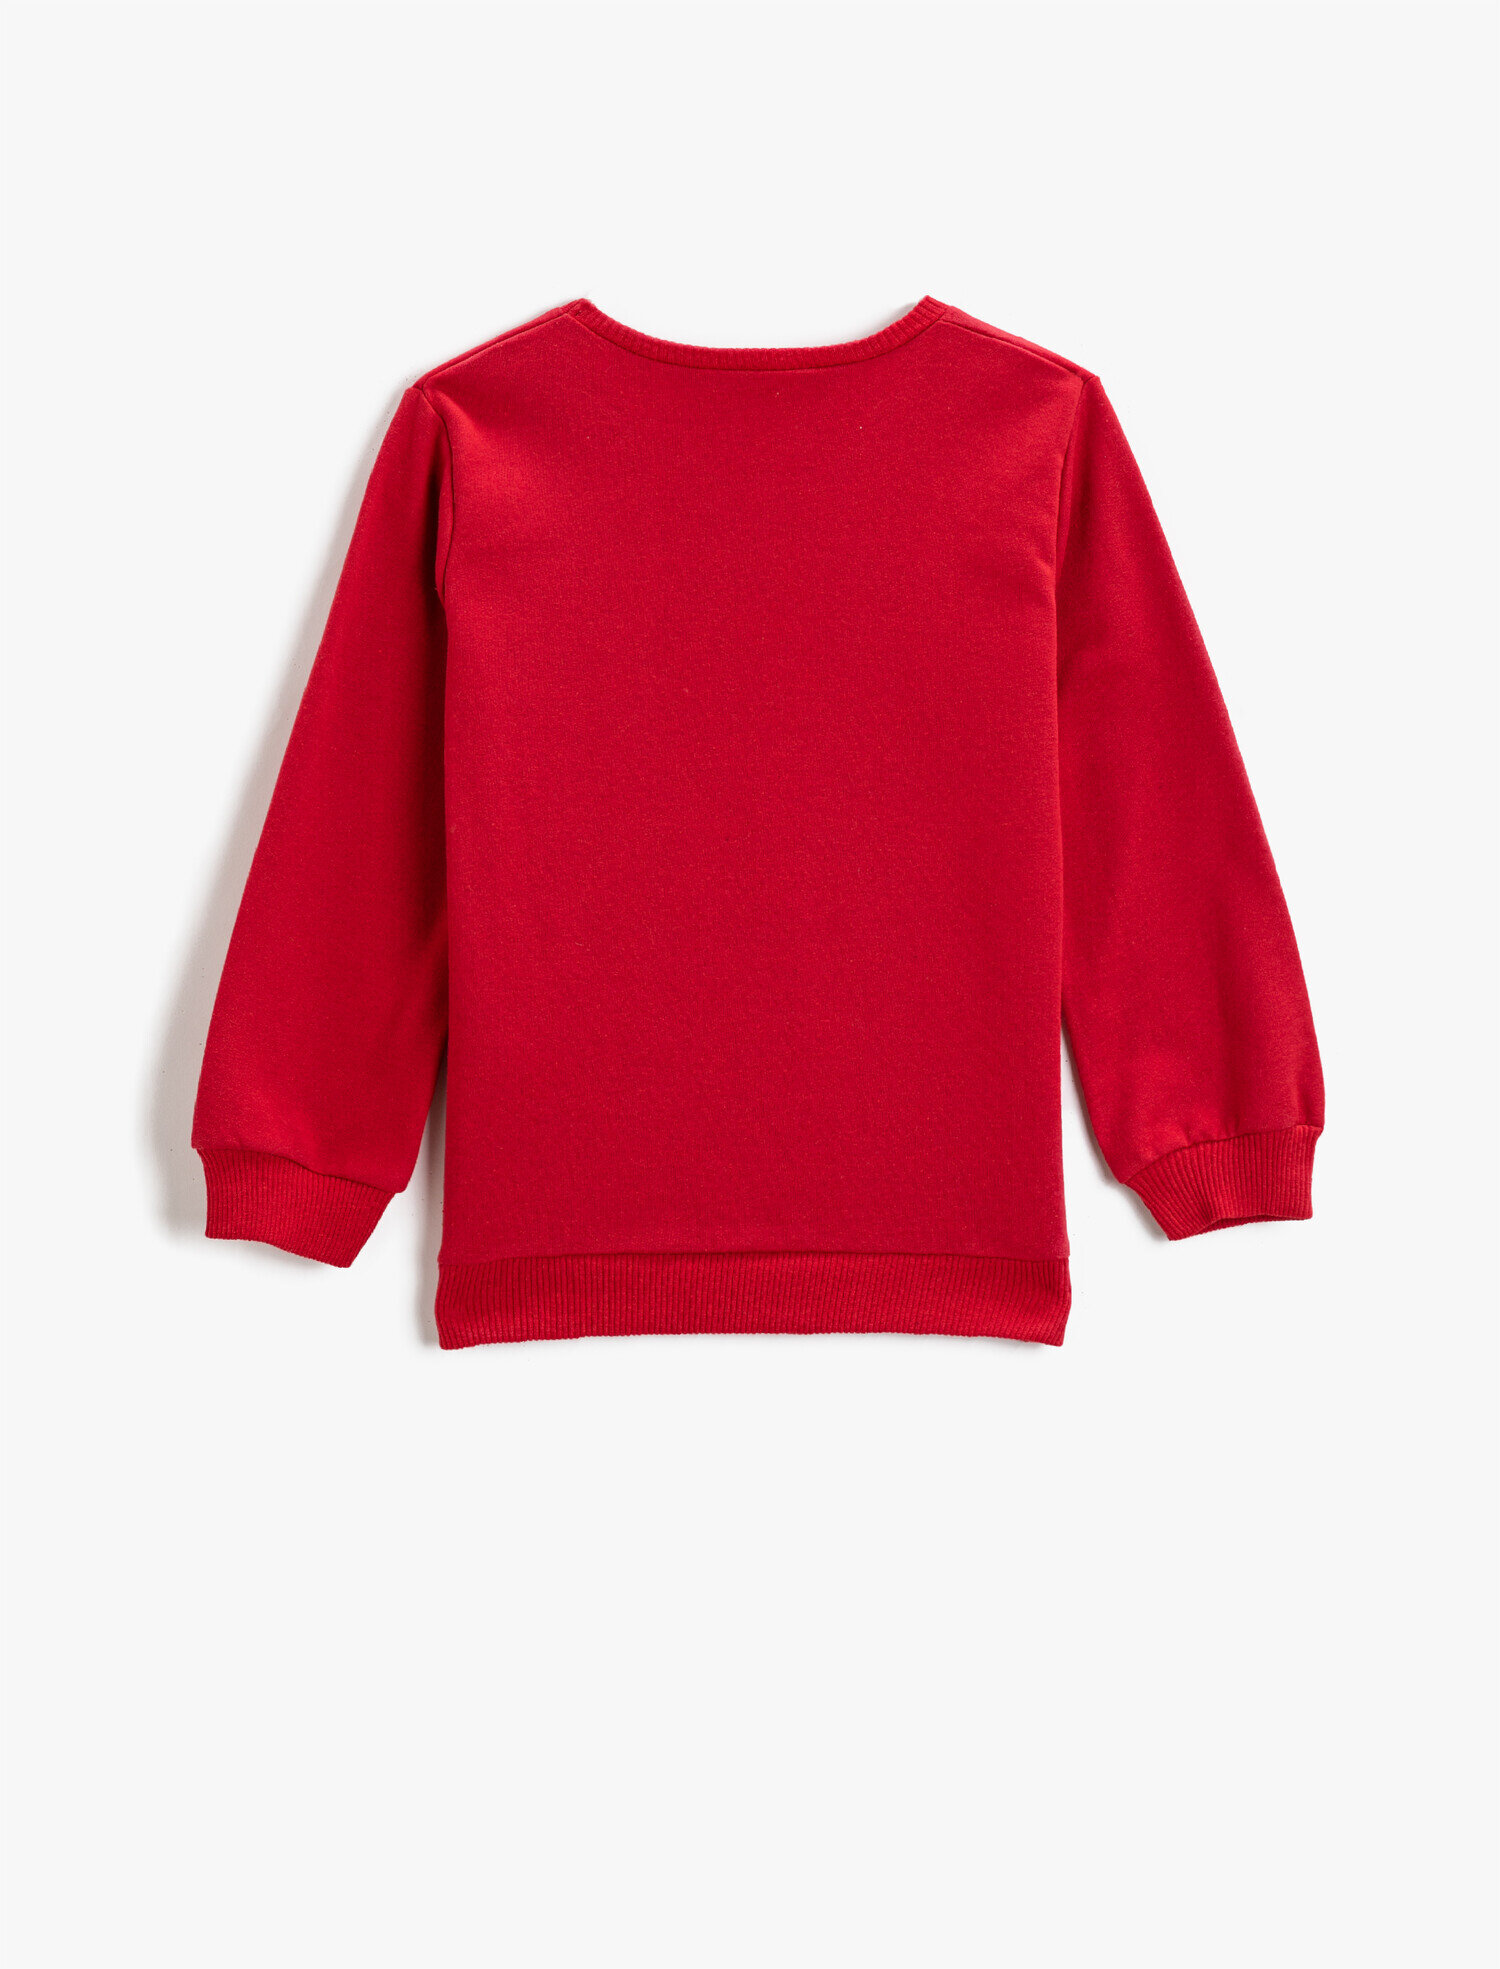 KIDS FASHION Shirts & T-shirts Elegant Red 13Y Sfera T-shirt discount 91% 